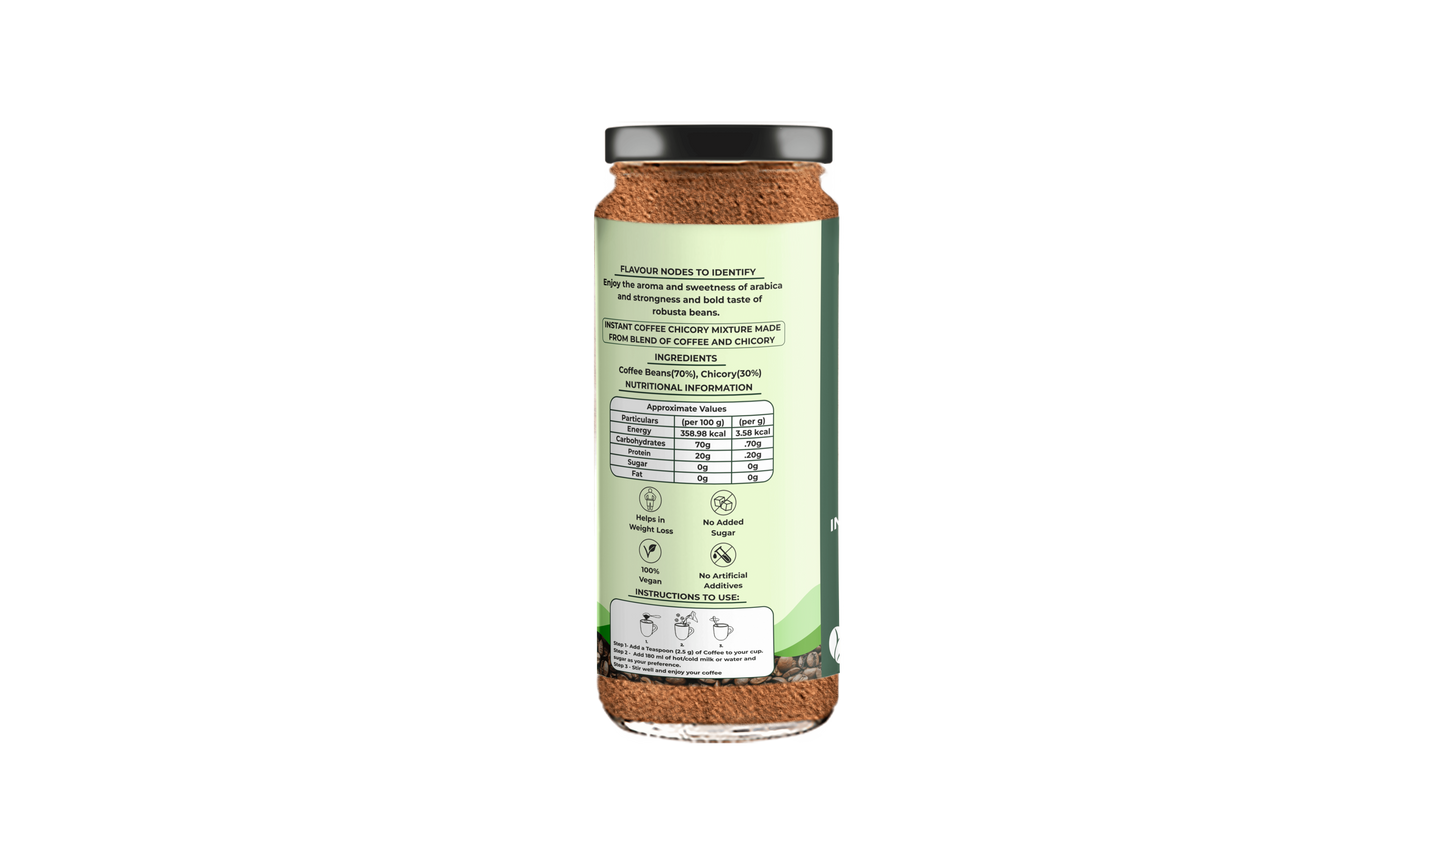 Jaipour Coffee Classic Instant Coffee Powder | 75gm Jar